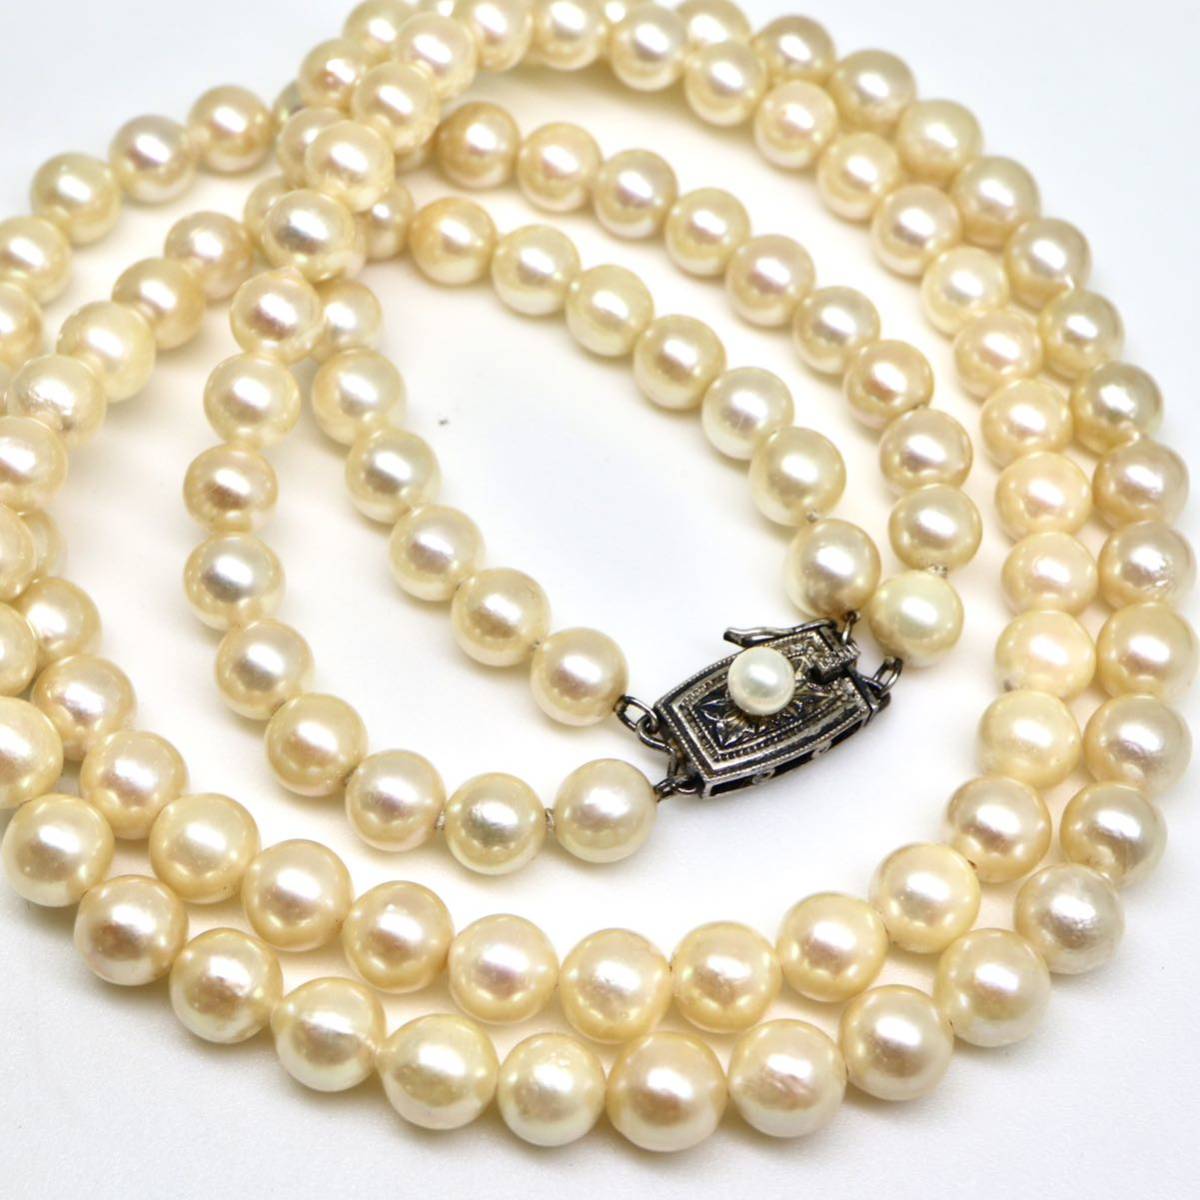 ◆アコヤ本真珠2連ネックレス◆N 40.0g 40.0cm 6.0-6.5mm珠 真珠 pearl necklace ジュエリー jewelry DA0/DA0_画像1